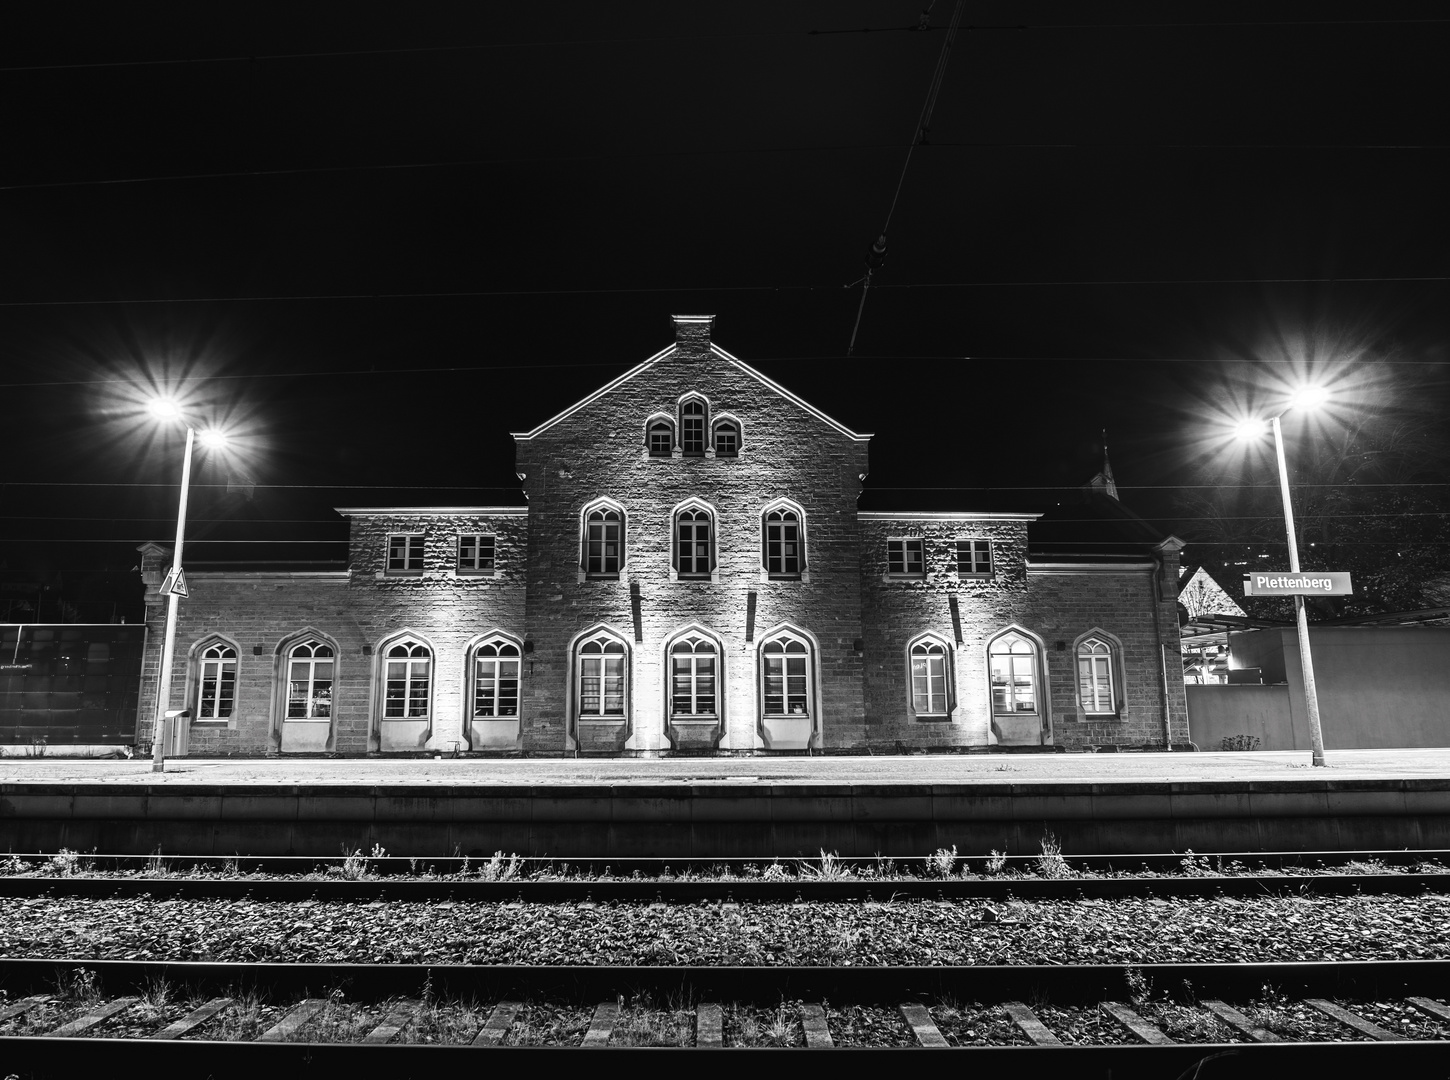 Bahnhof Plettenberg